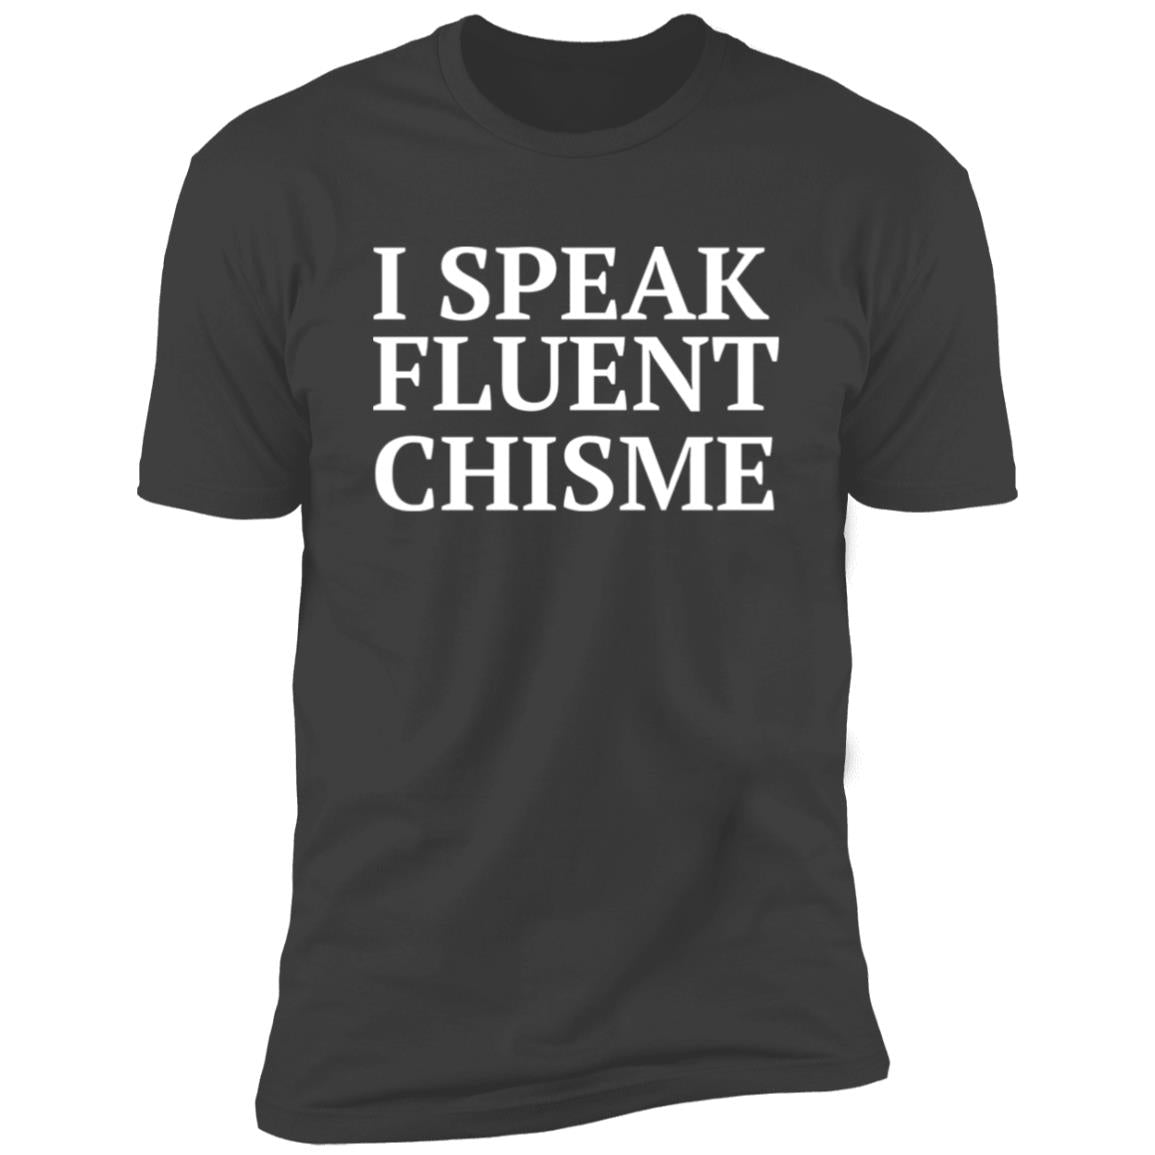 I speak  fluent chisme